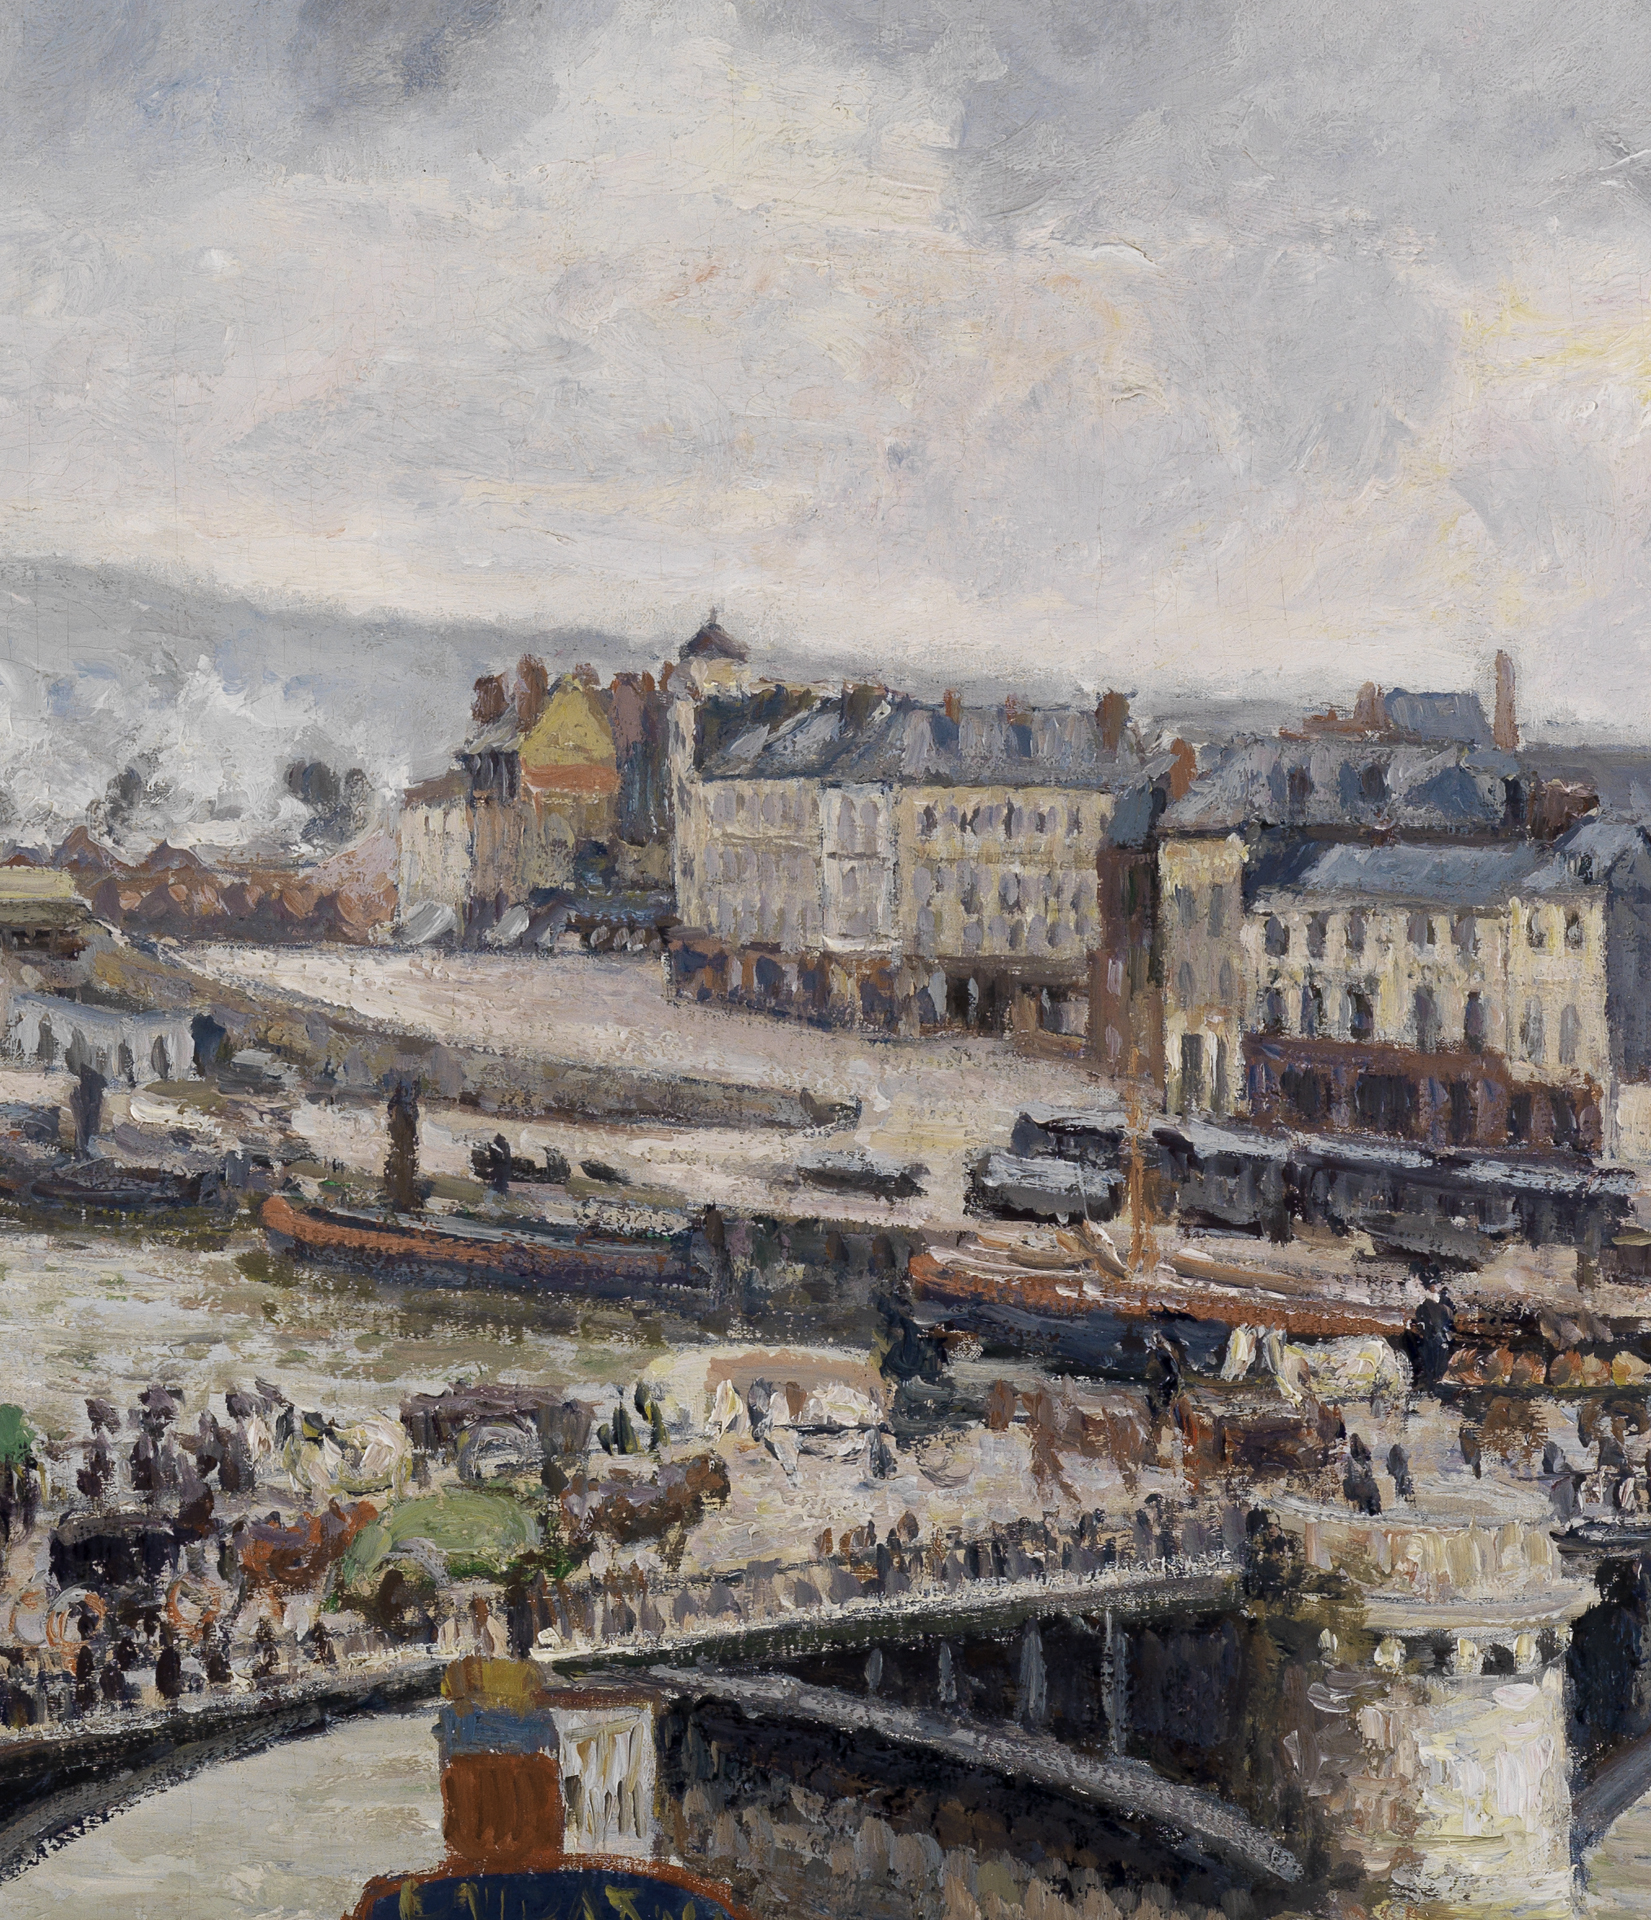 Blick auf die große Brücke zu Rouen von Camille Pissarro. Im Hintergrund der mit Kutschen und Menschen belebten Brücke sind anlegende Schiffe und Häuser zu sehen.